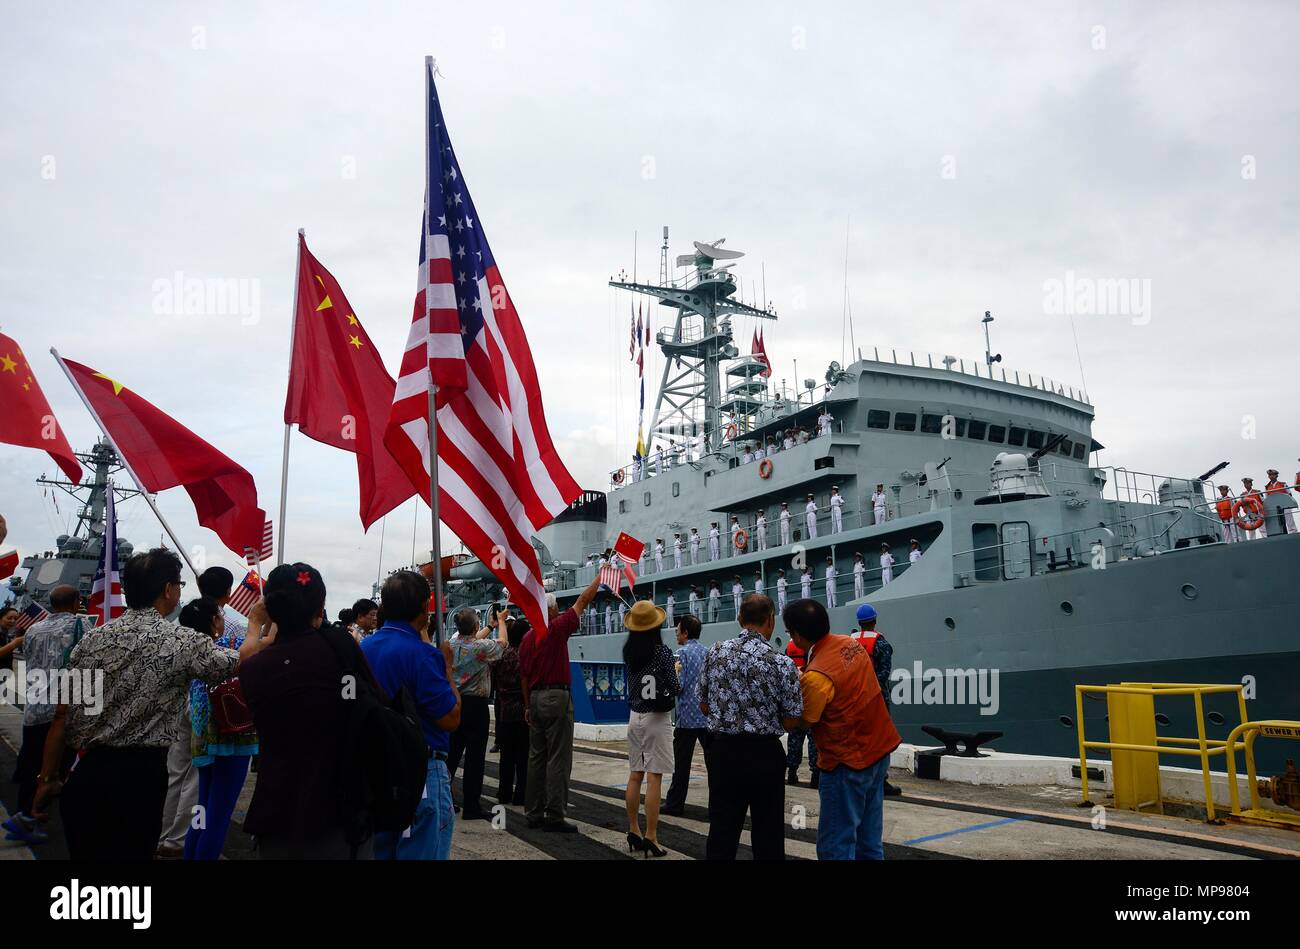 Die chinesische Völker Liberation Army Navy Typ 679 midshipmen Schulschiff Zheng He auf der gemeinsamen Basis Pearl Harbor-Hickam Oktober 12, 2015 in Pearl Harbor, Hawaii eintrifft. (Foto: Laurie Dexter über Planetpix) Stockfoto